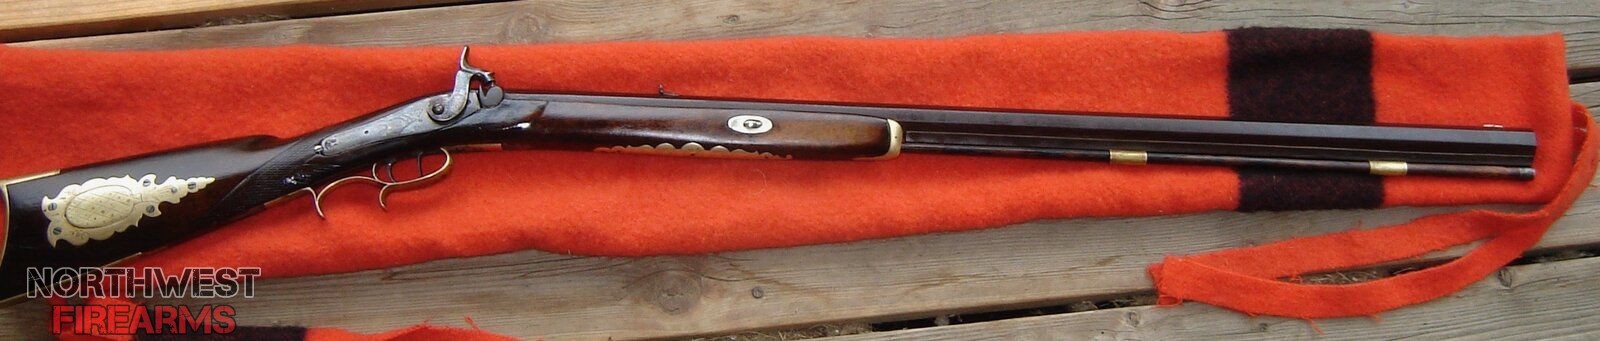 F.E.Seiferth Sporting Rifle circa 1840's -1860's